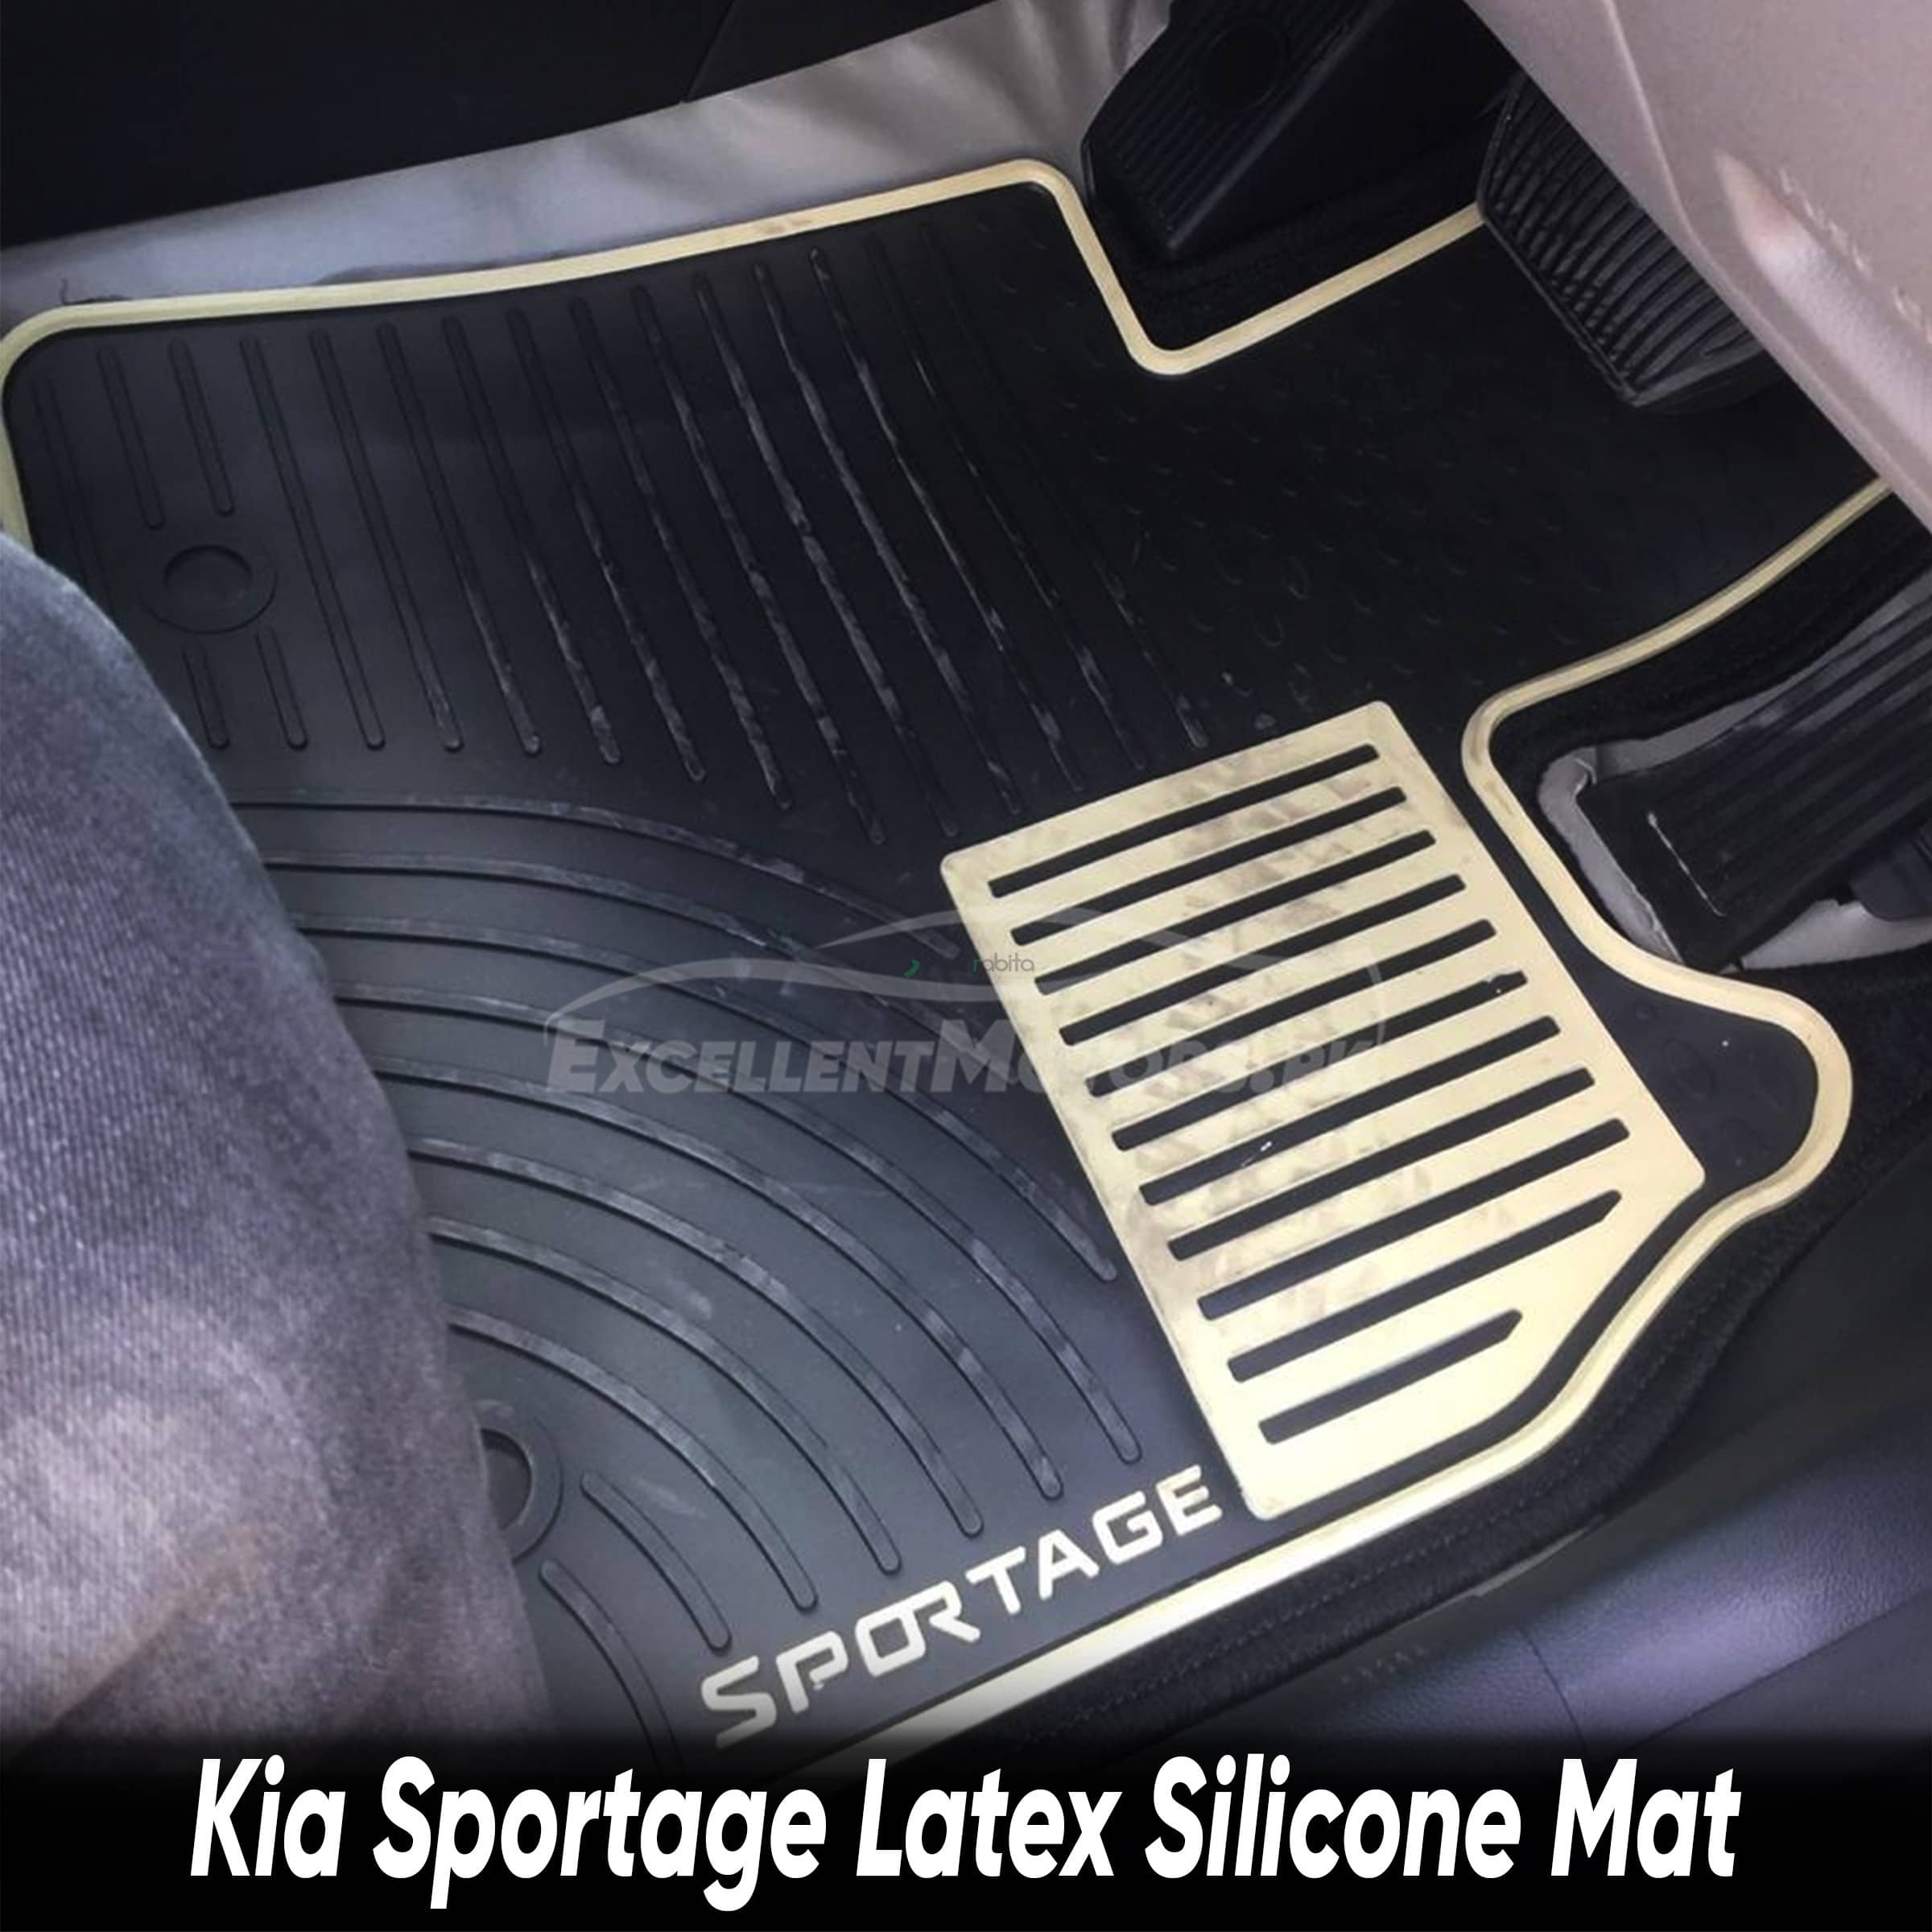 Kia Sportage Latex Silicone Mat